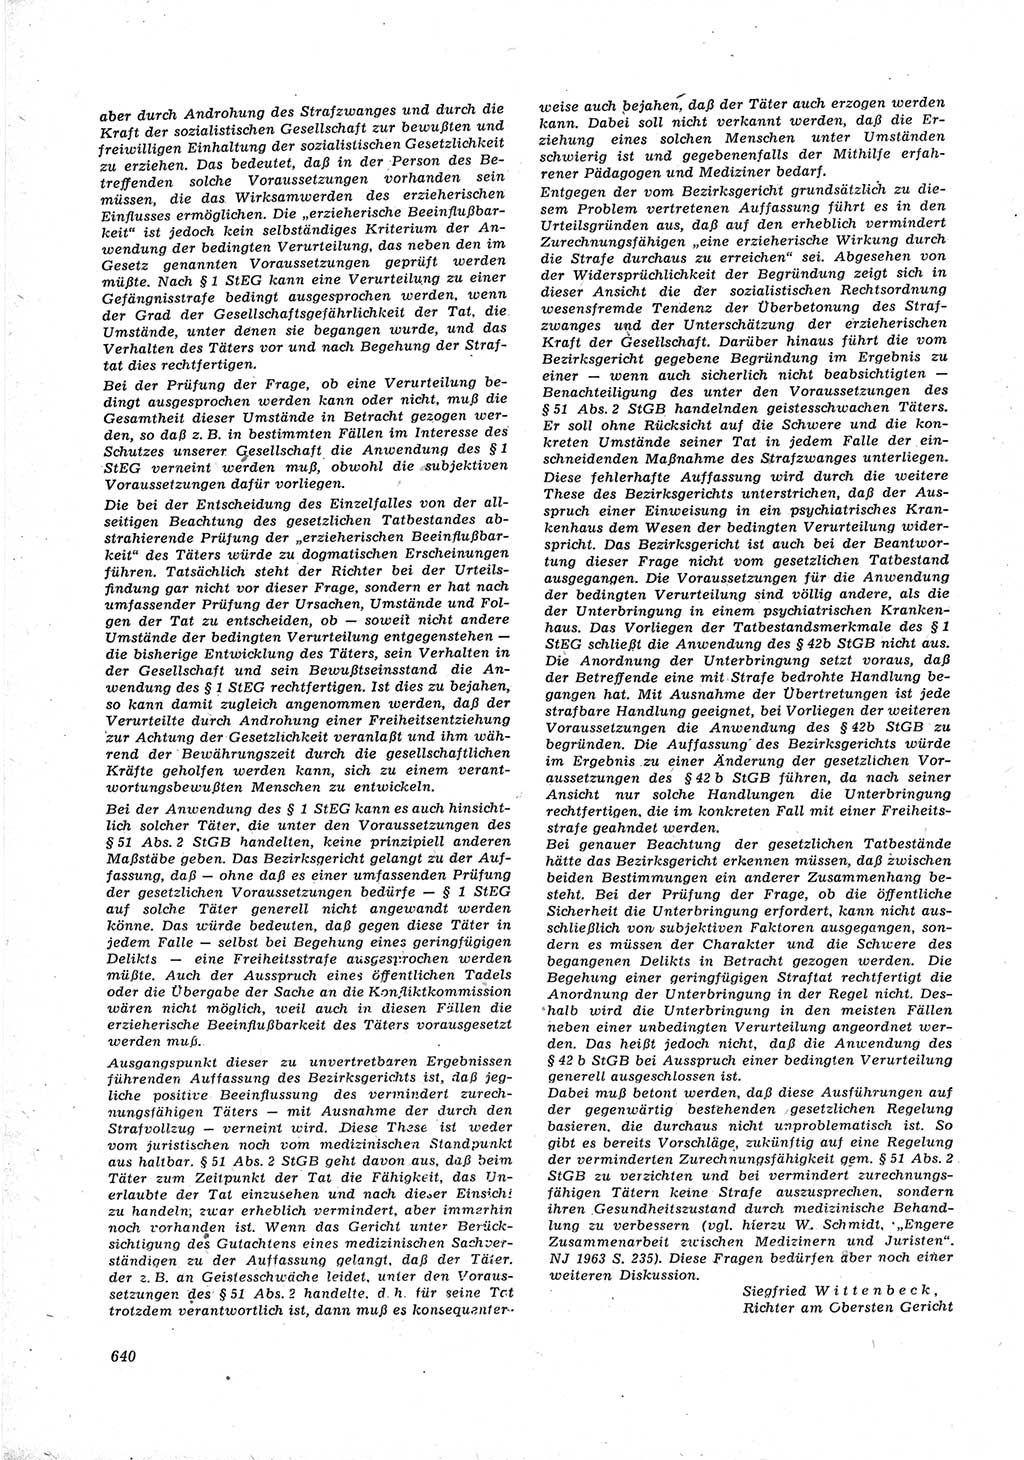 Neue Justiz (NJ), Zeitschrift für Recht und Rechtswissenschaft [Deutsche Demokratische Republik (DDR)], 17. Jahrgang 1963, Seite 640 (NJ DDR 1963, S. 640)